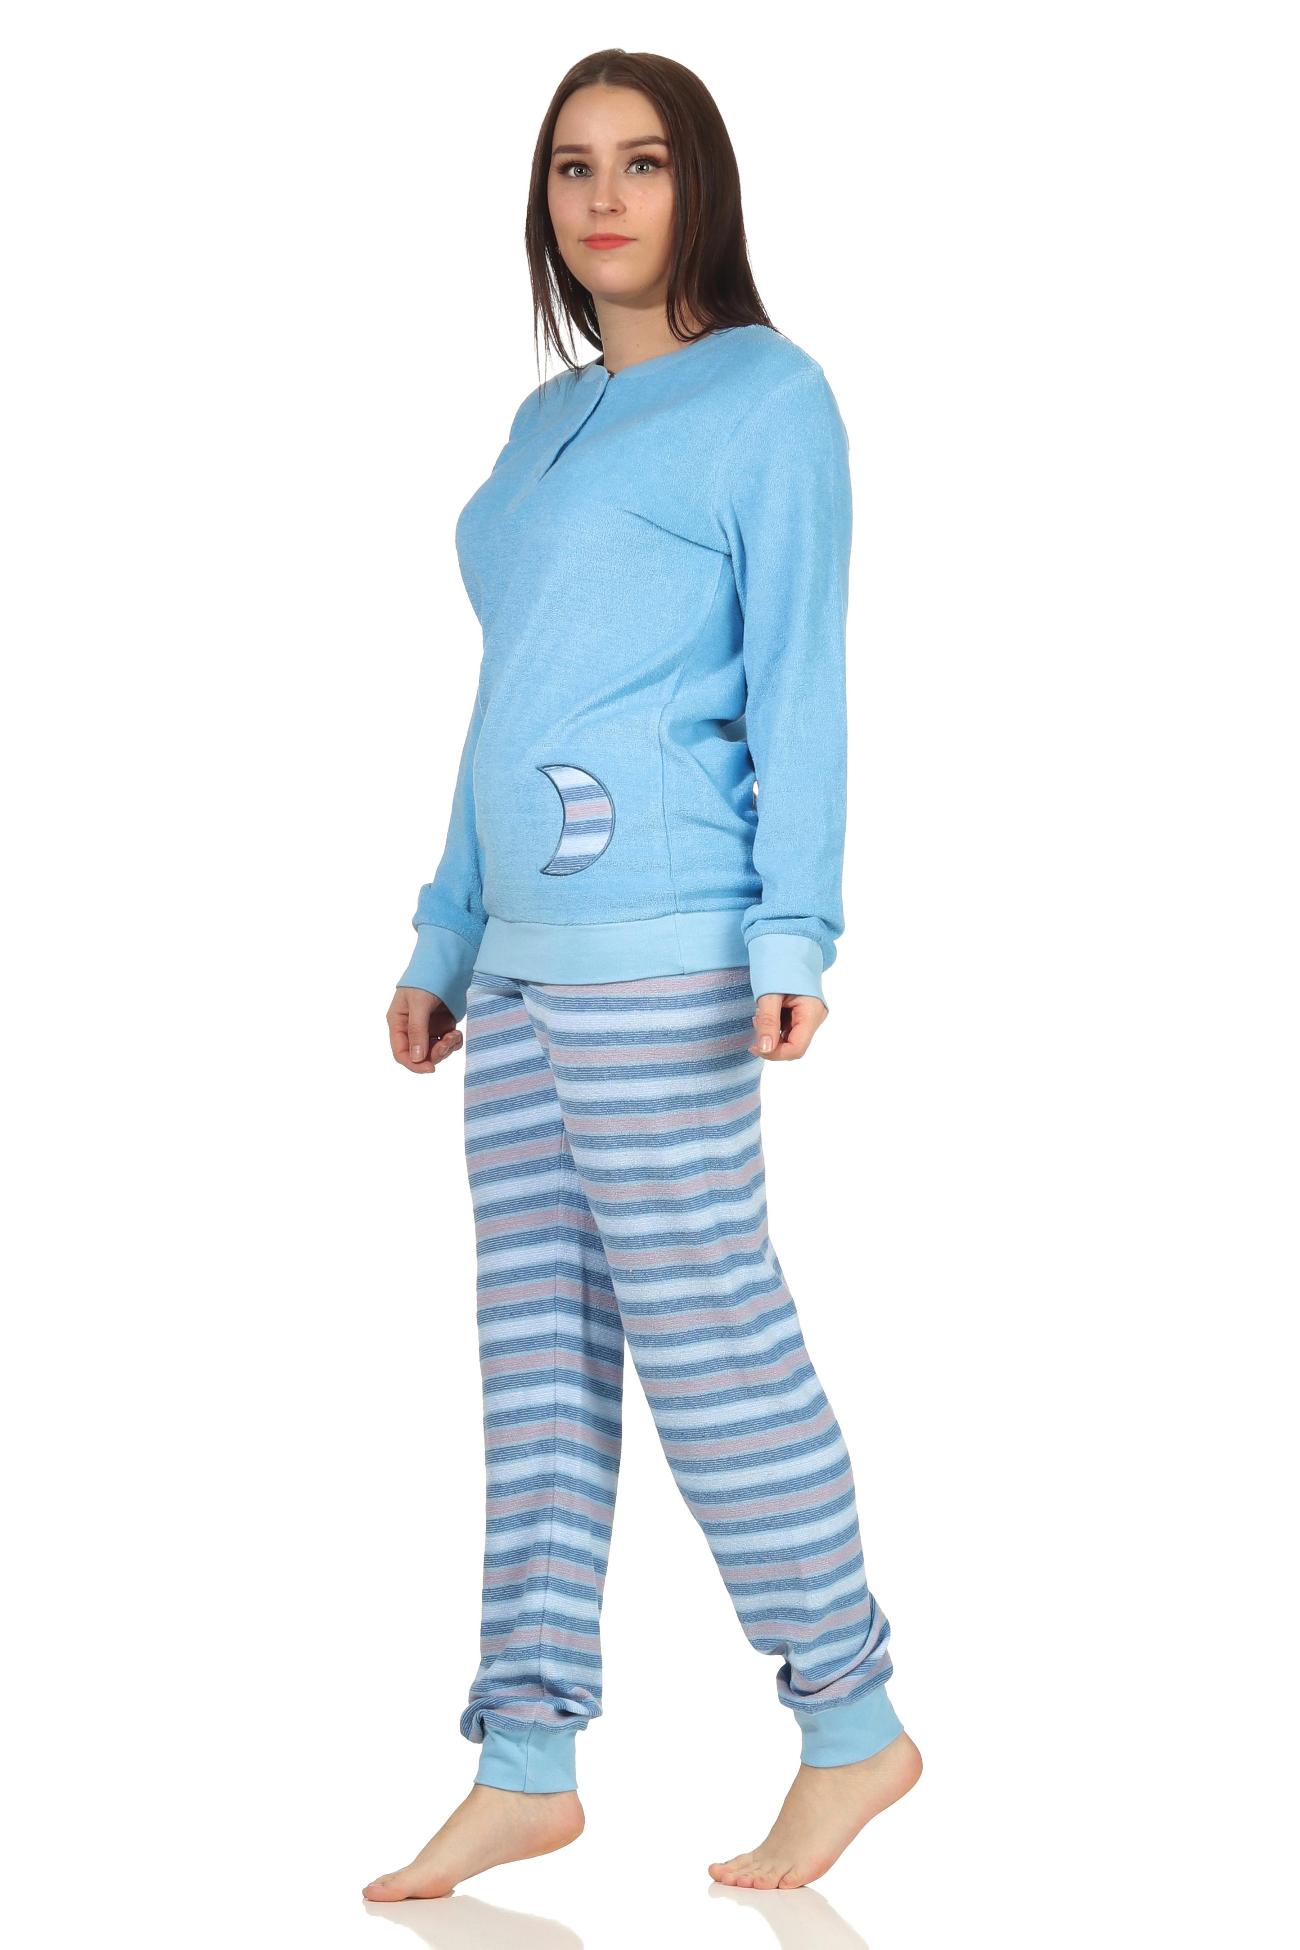 Damen Frottee Schlafanzug Pyjama mit Bündchen - Hose gestreift - auch in Übergrössen FALSCH